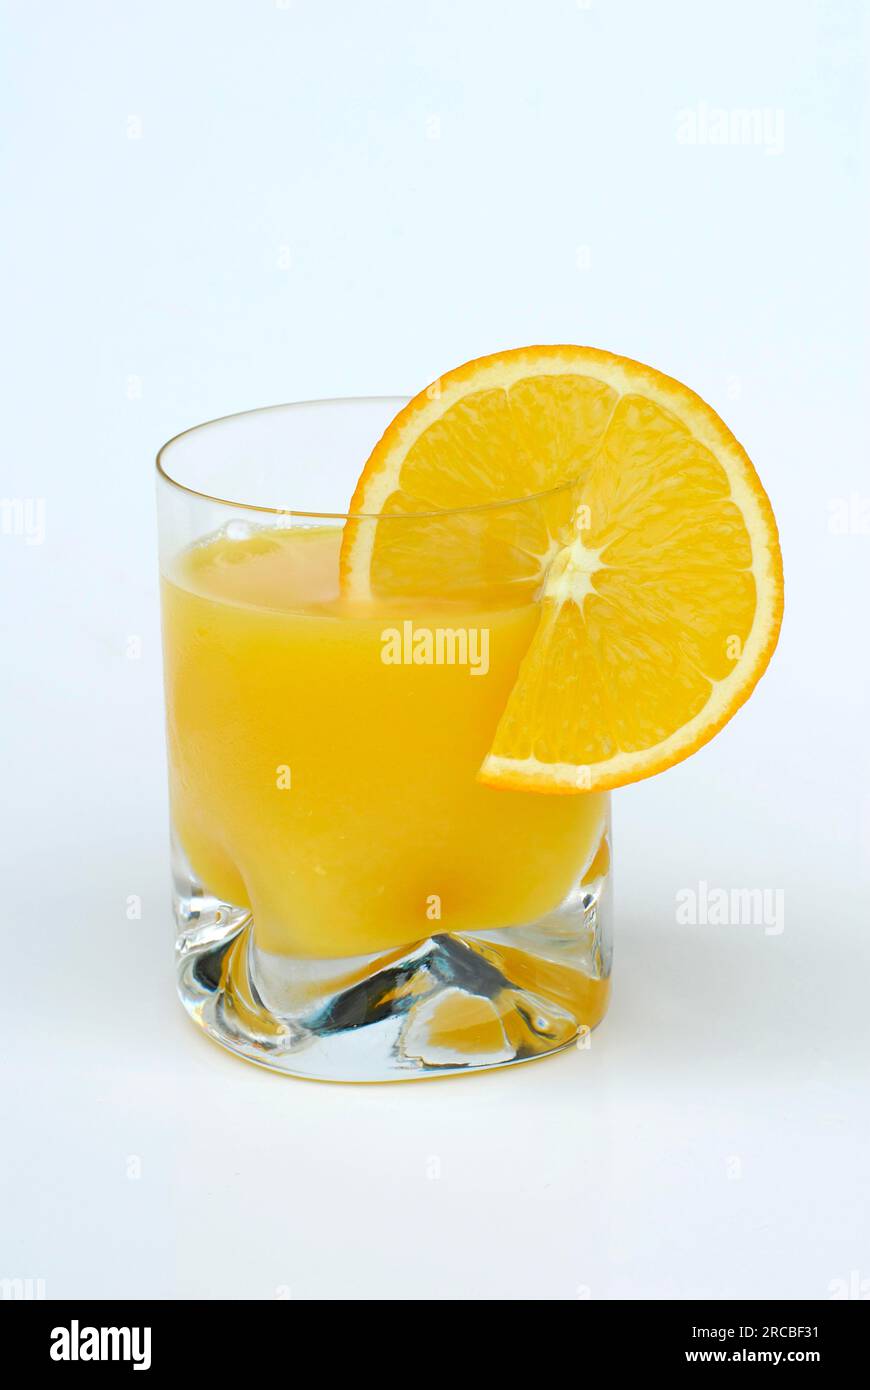 Frisch gepresster Orangensaft, Orangenscheibe auf dem Glas, n n (Citrus sinensis) Orangensaft Stockfoto